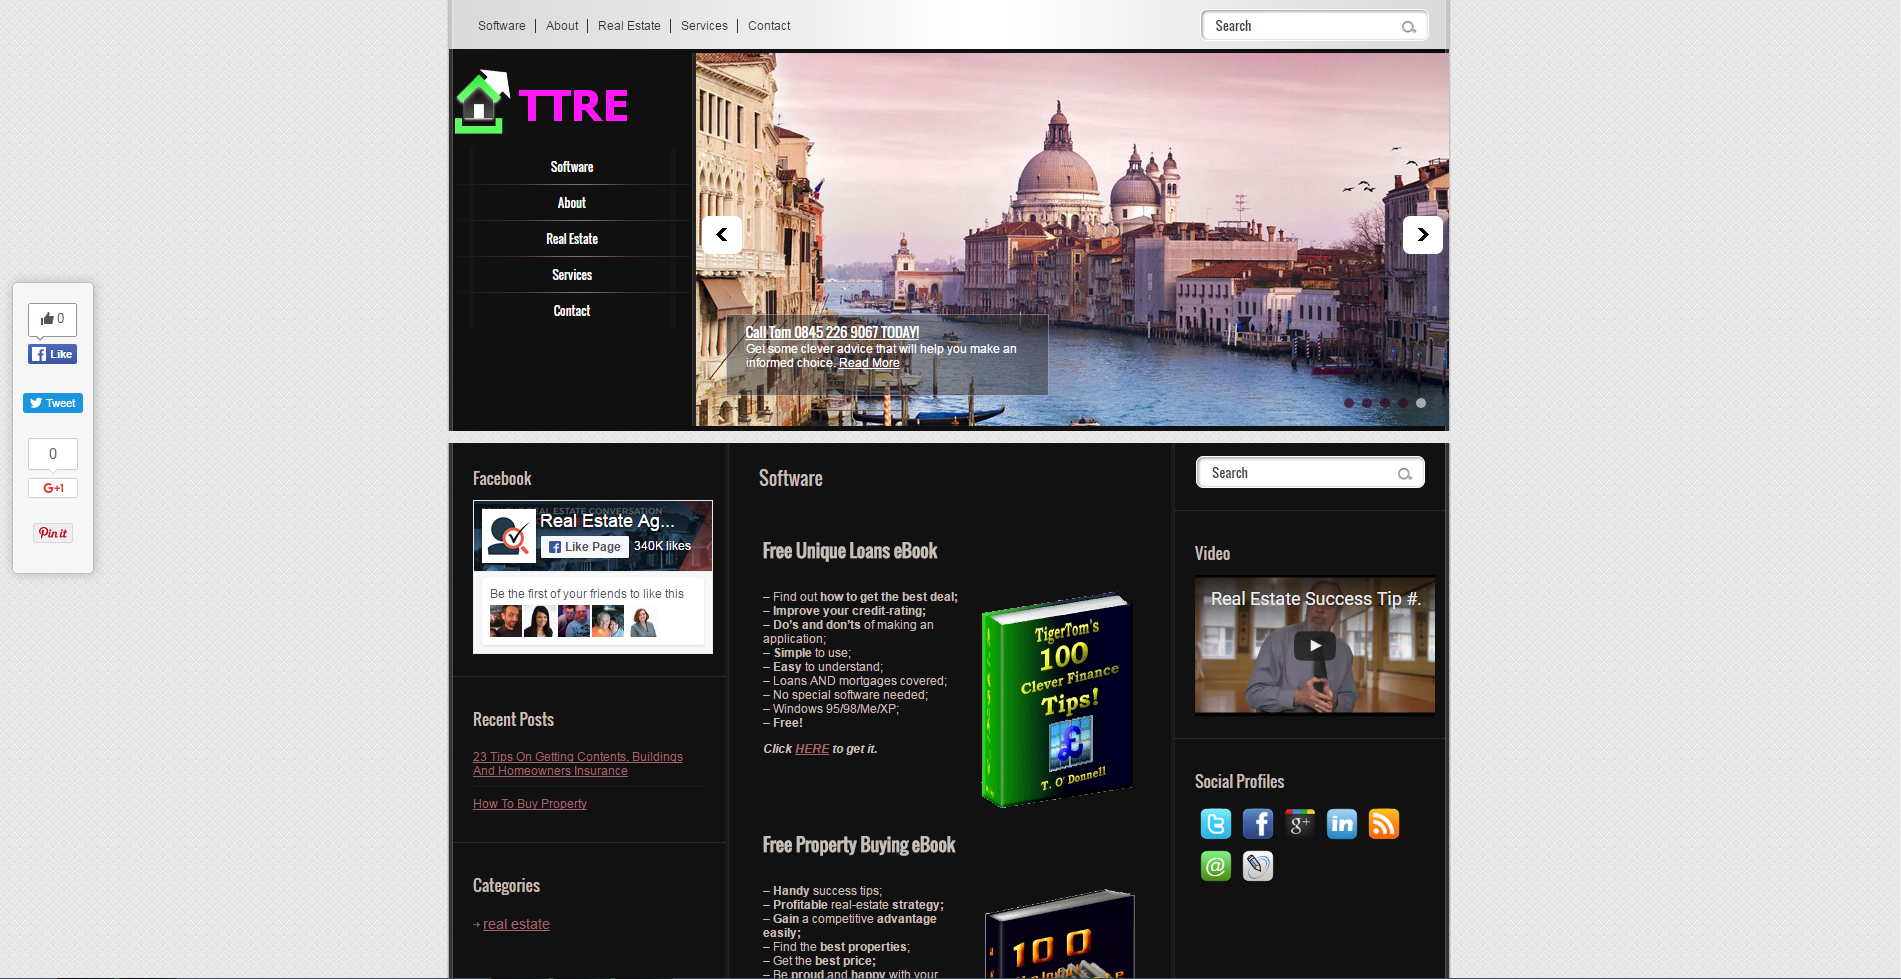 tt-website-design-screenshots15